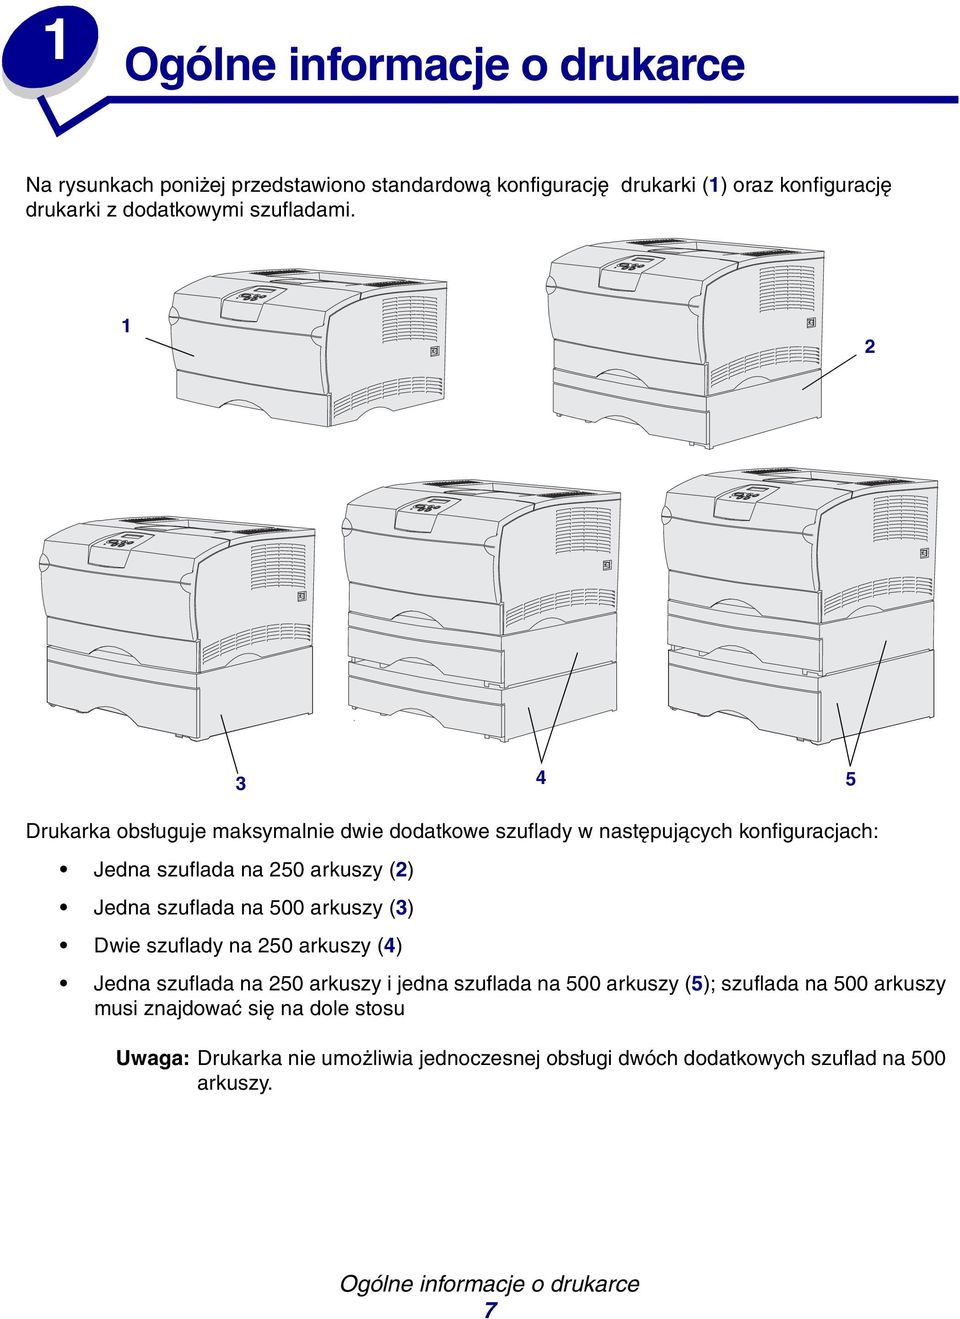 1 2 Drukarka obsługuje maksymalnie dwie dodatkowe szuflady w następujących konfiguracjach: Jedna szuflada na 250 arkuszy (2) Jedna szuflada na 500